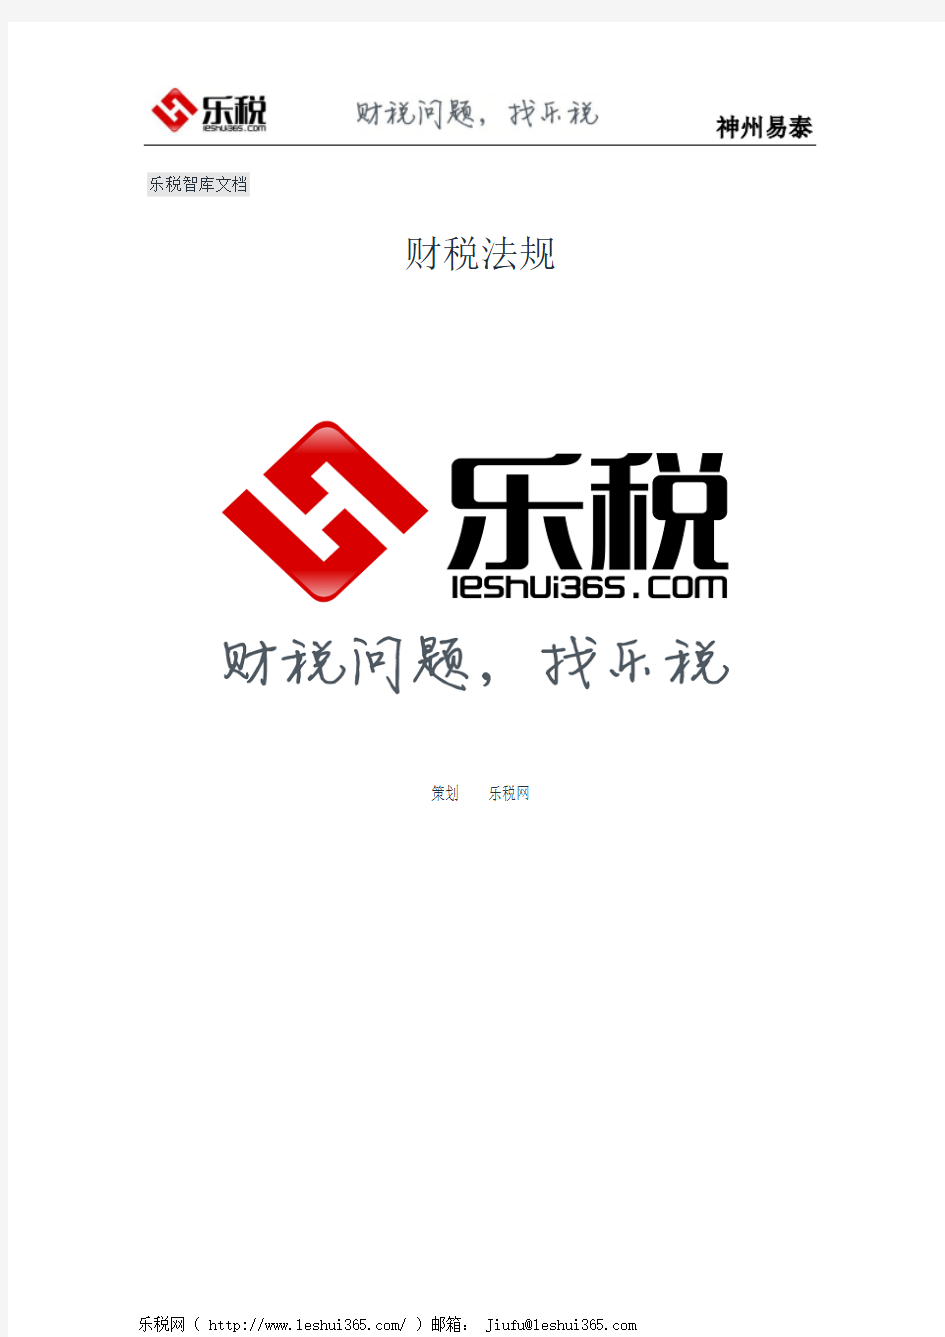 河南省国家税务局关于网上办税服务厅最新纳税事项的温馨提示